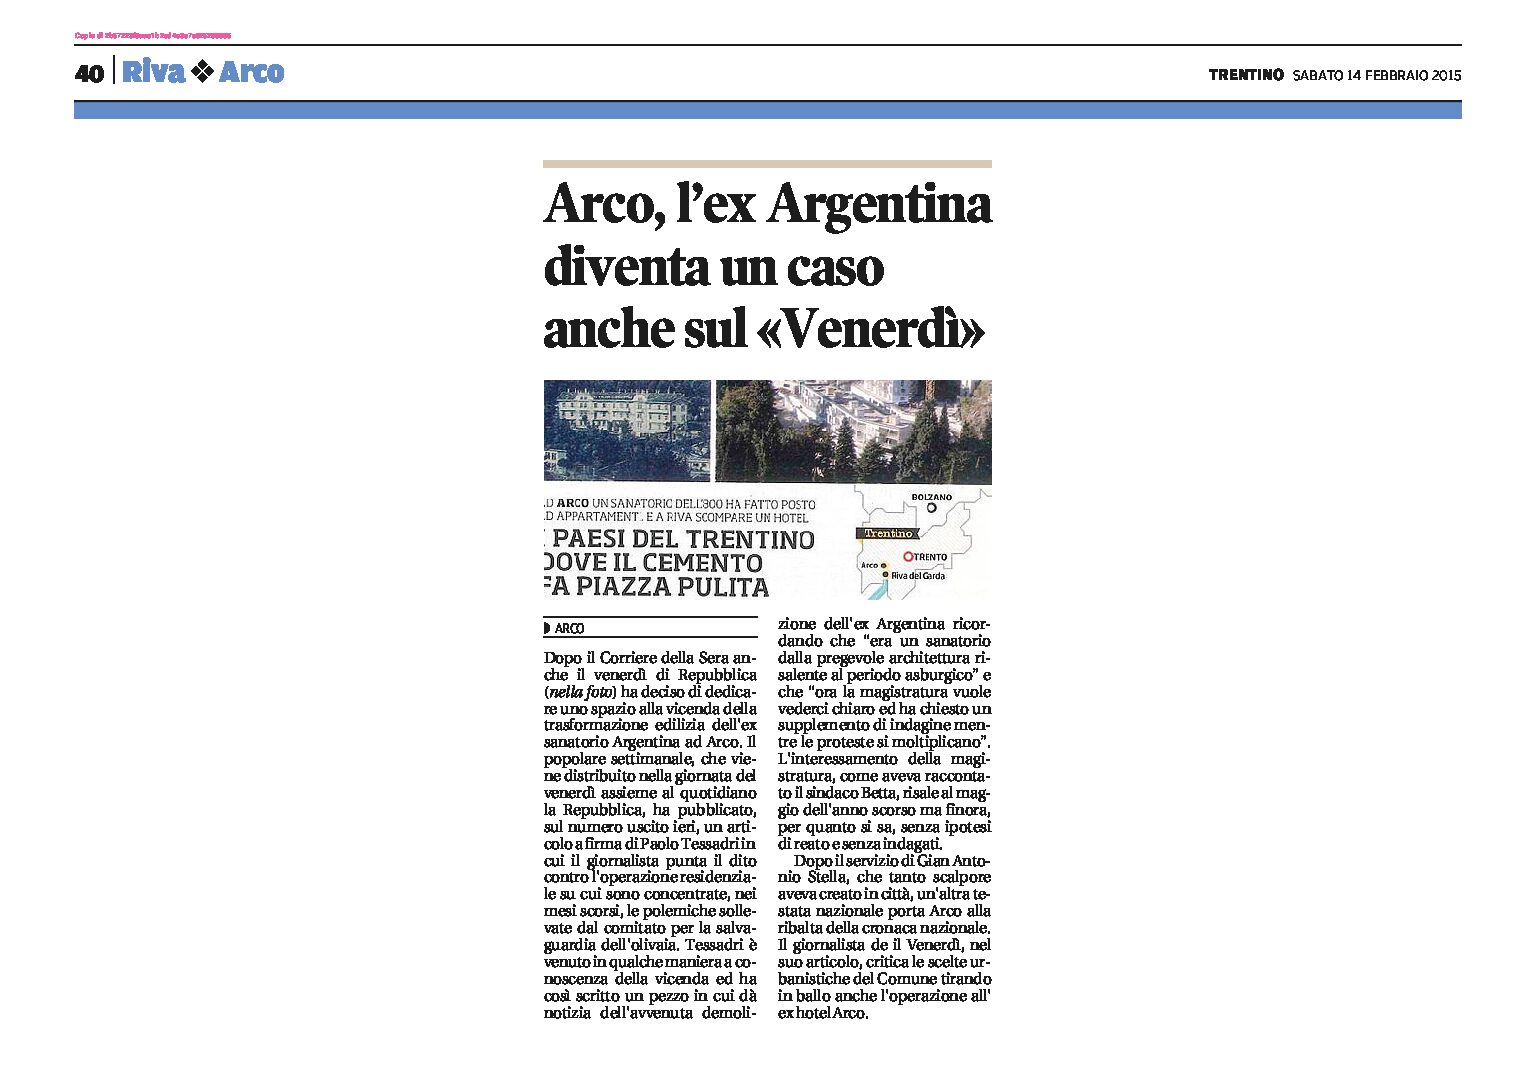 Arco: l’ex Argentina diventa un caso anche sul “Venerdì”